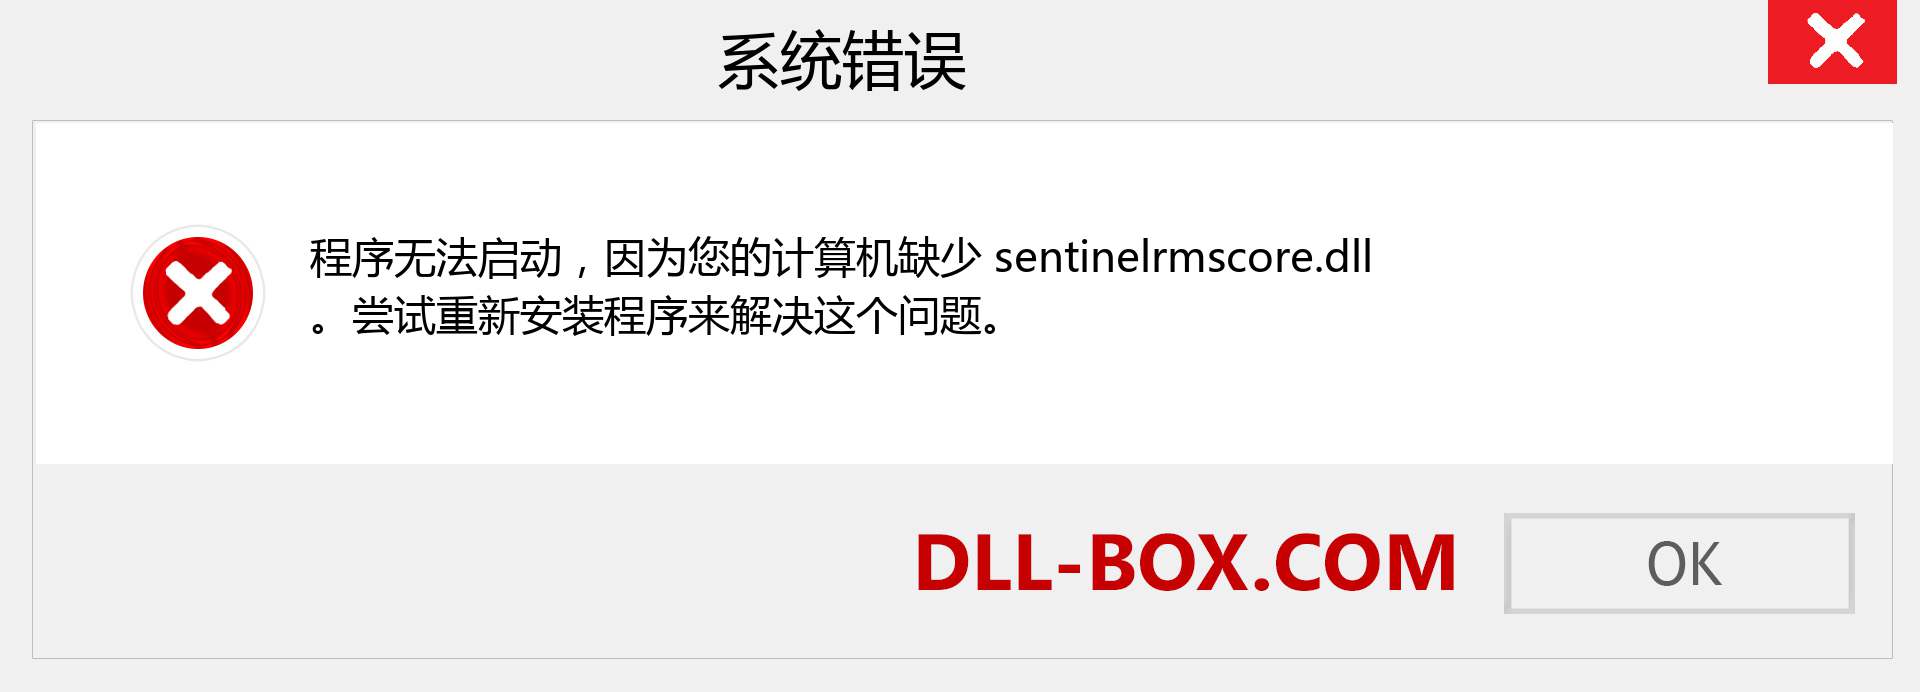 sentinelrmscore.dll 文件丢失？。 适用于 Windows 7、8、10 的下载 - 修复 Windows、照片、图像上的 sentinelrmscore dll 丢失错误